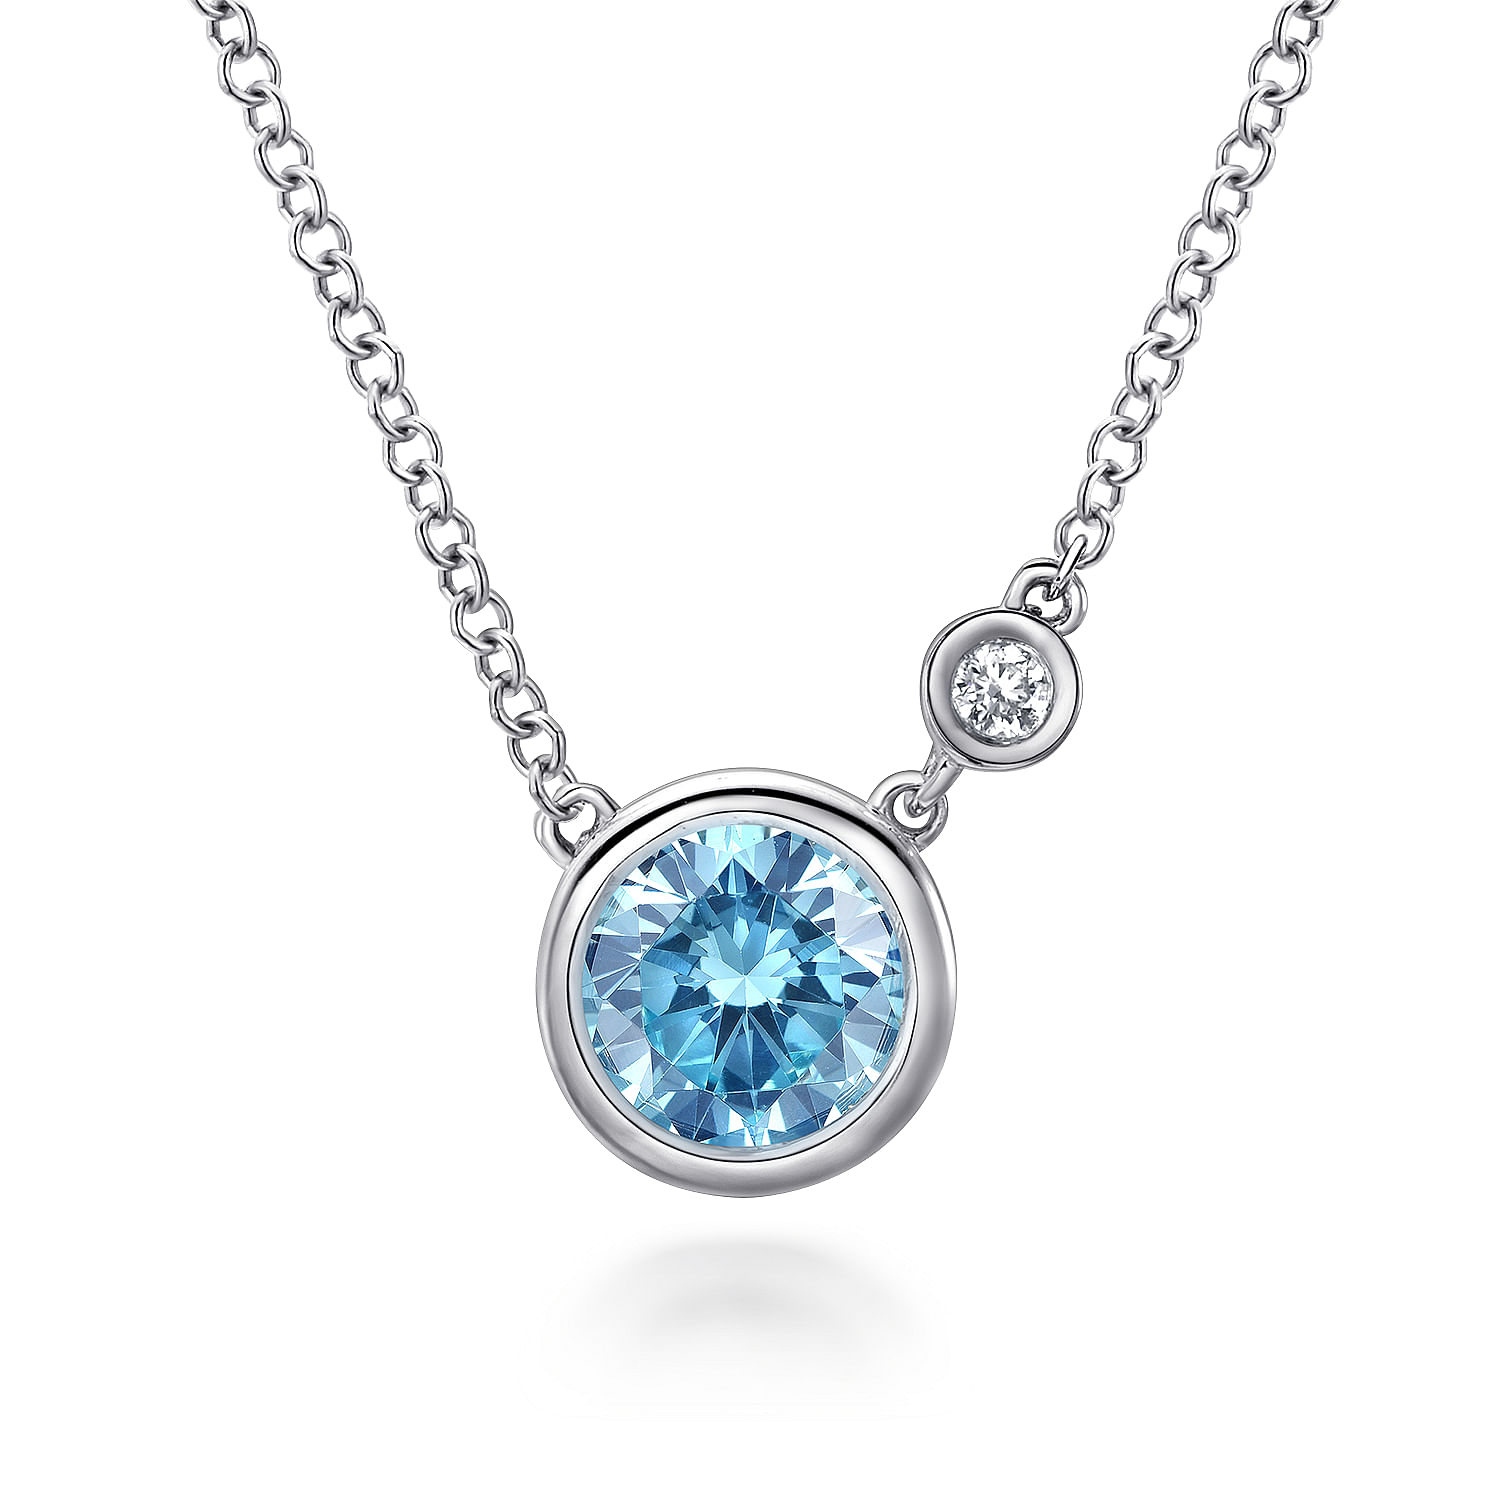 925 Sterling Silver Blue Topaz and Diamond Pendant Necklace W Bezel Set